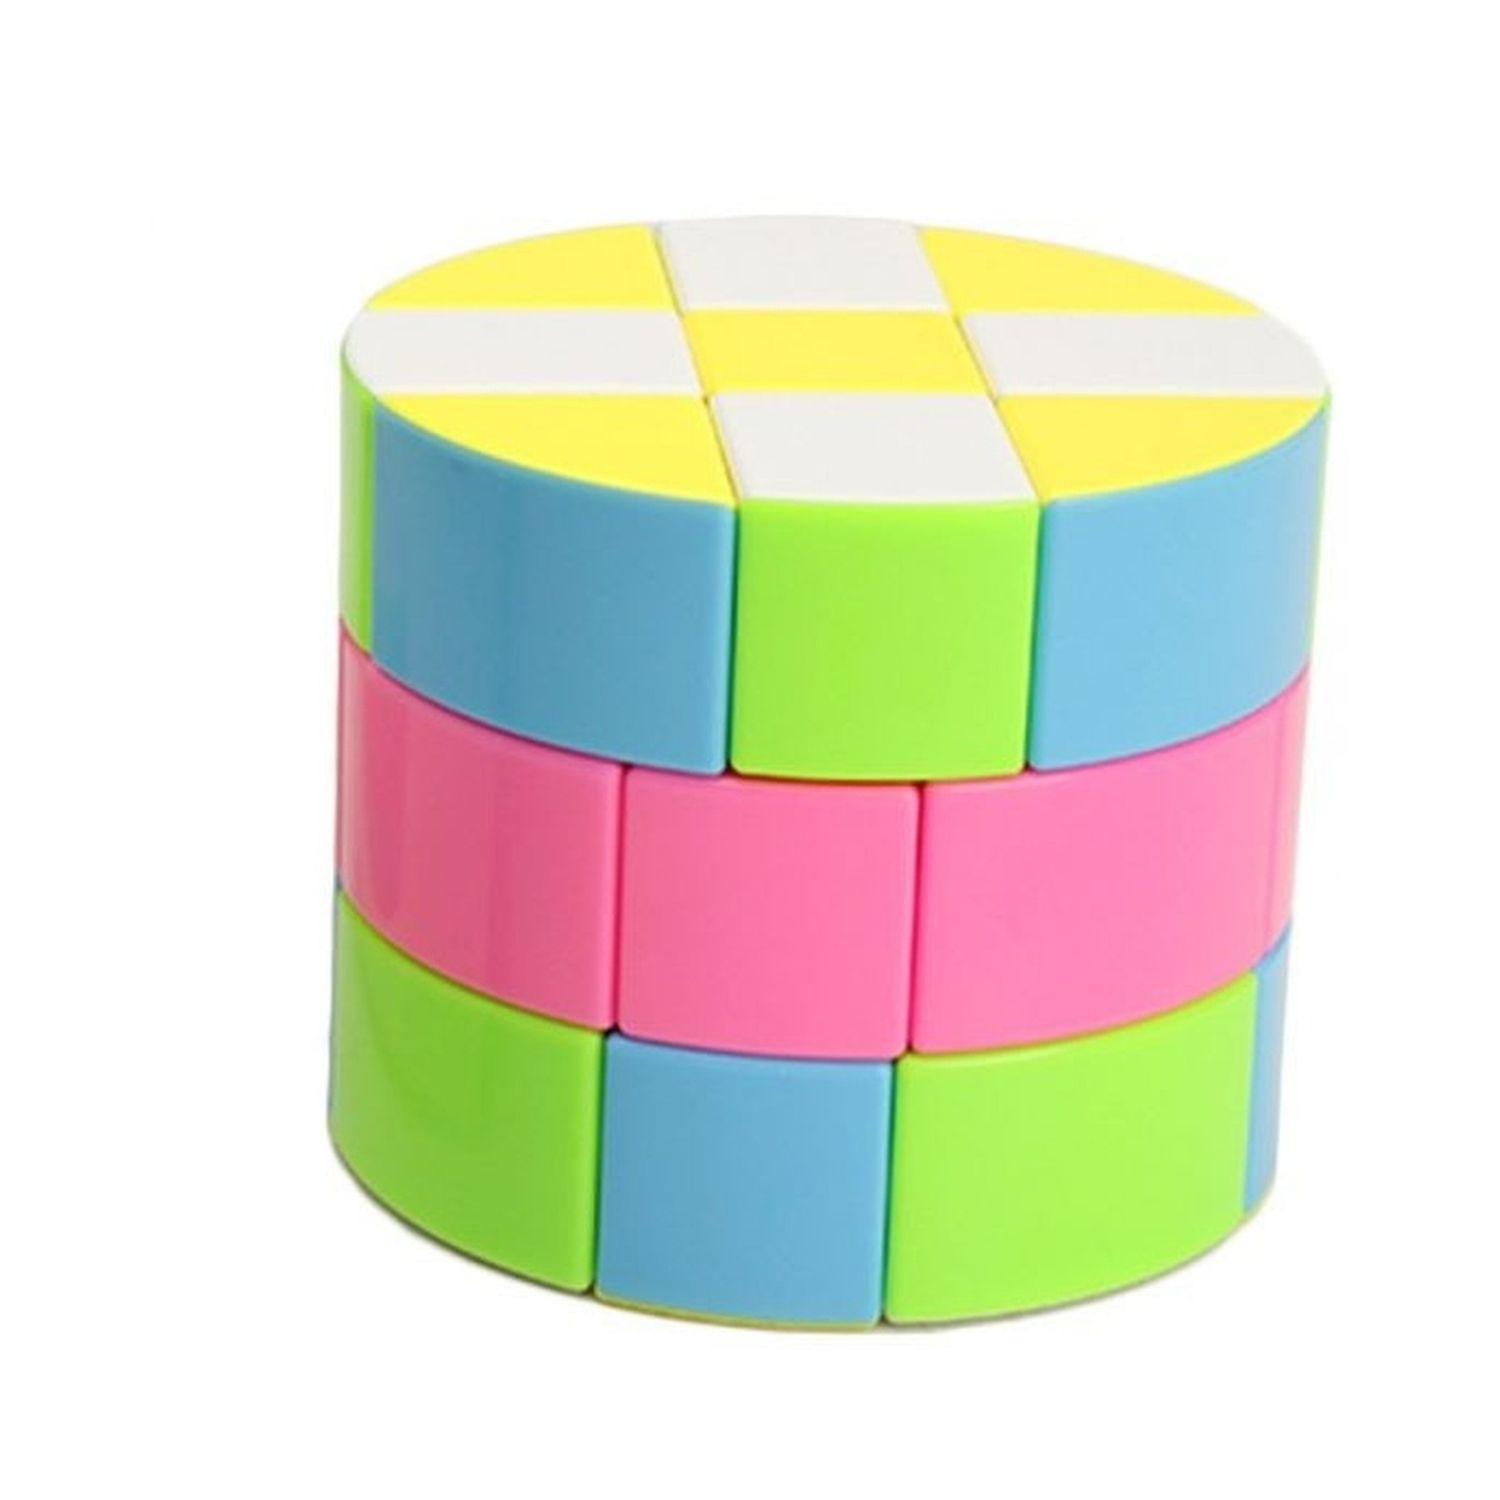 Игрушка развивающая Rabizy Кубик Рубика цилиндр 3х3 - фото 1